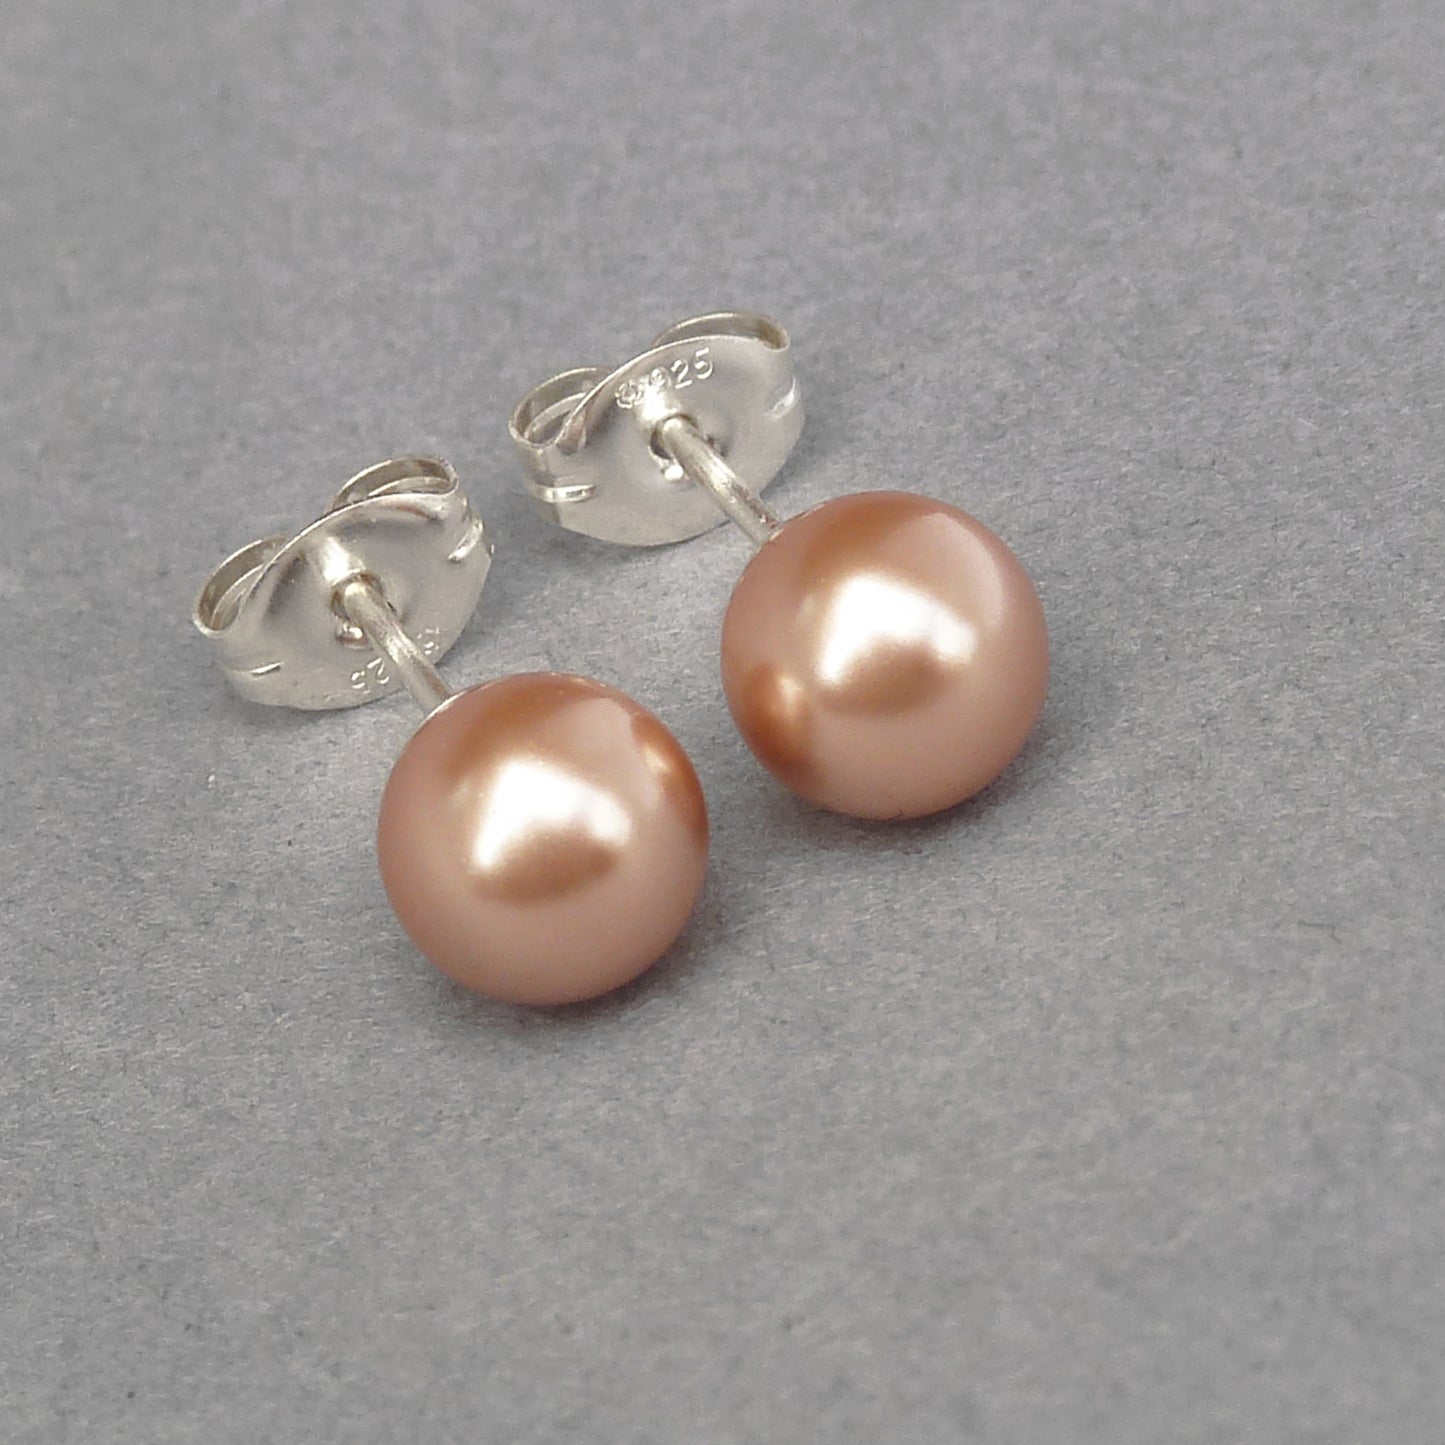 Small copper pearl stud earrings